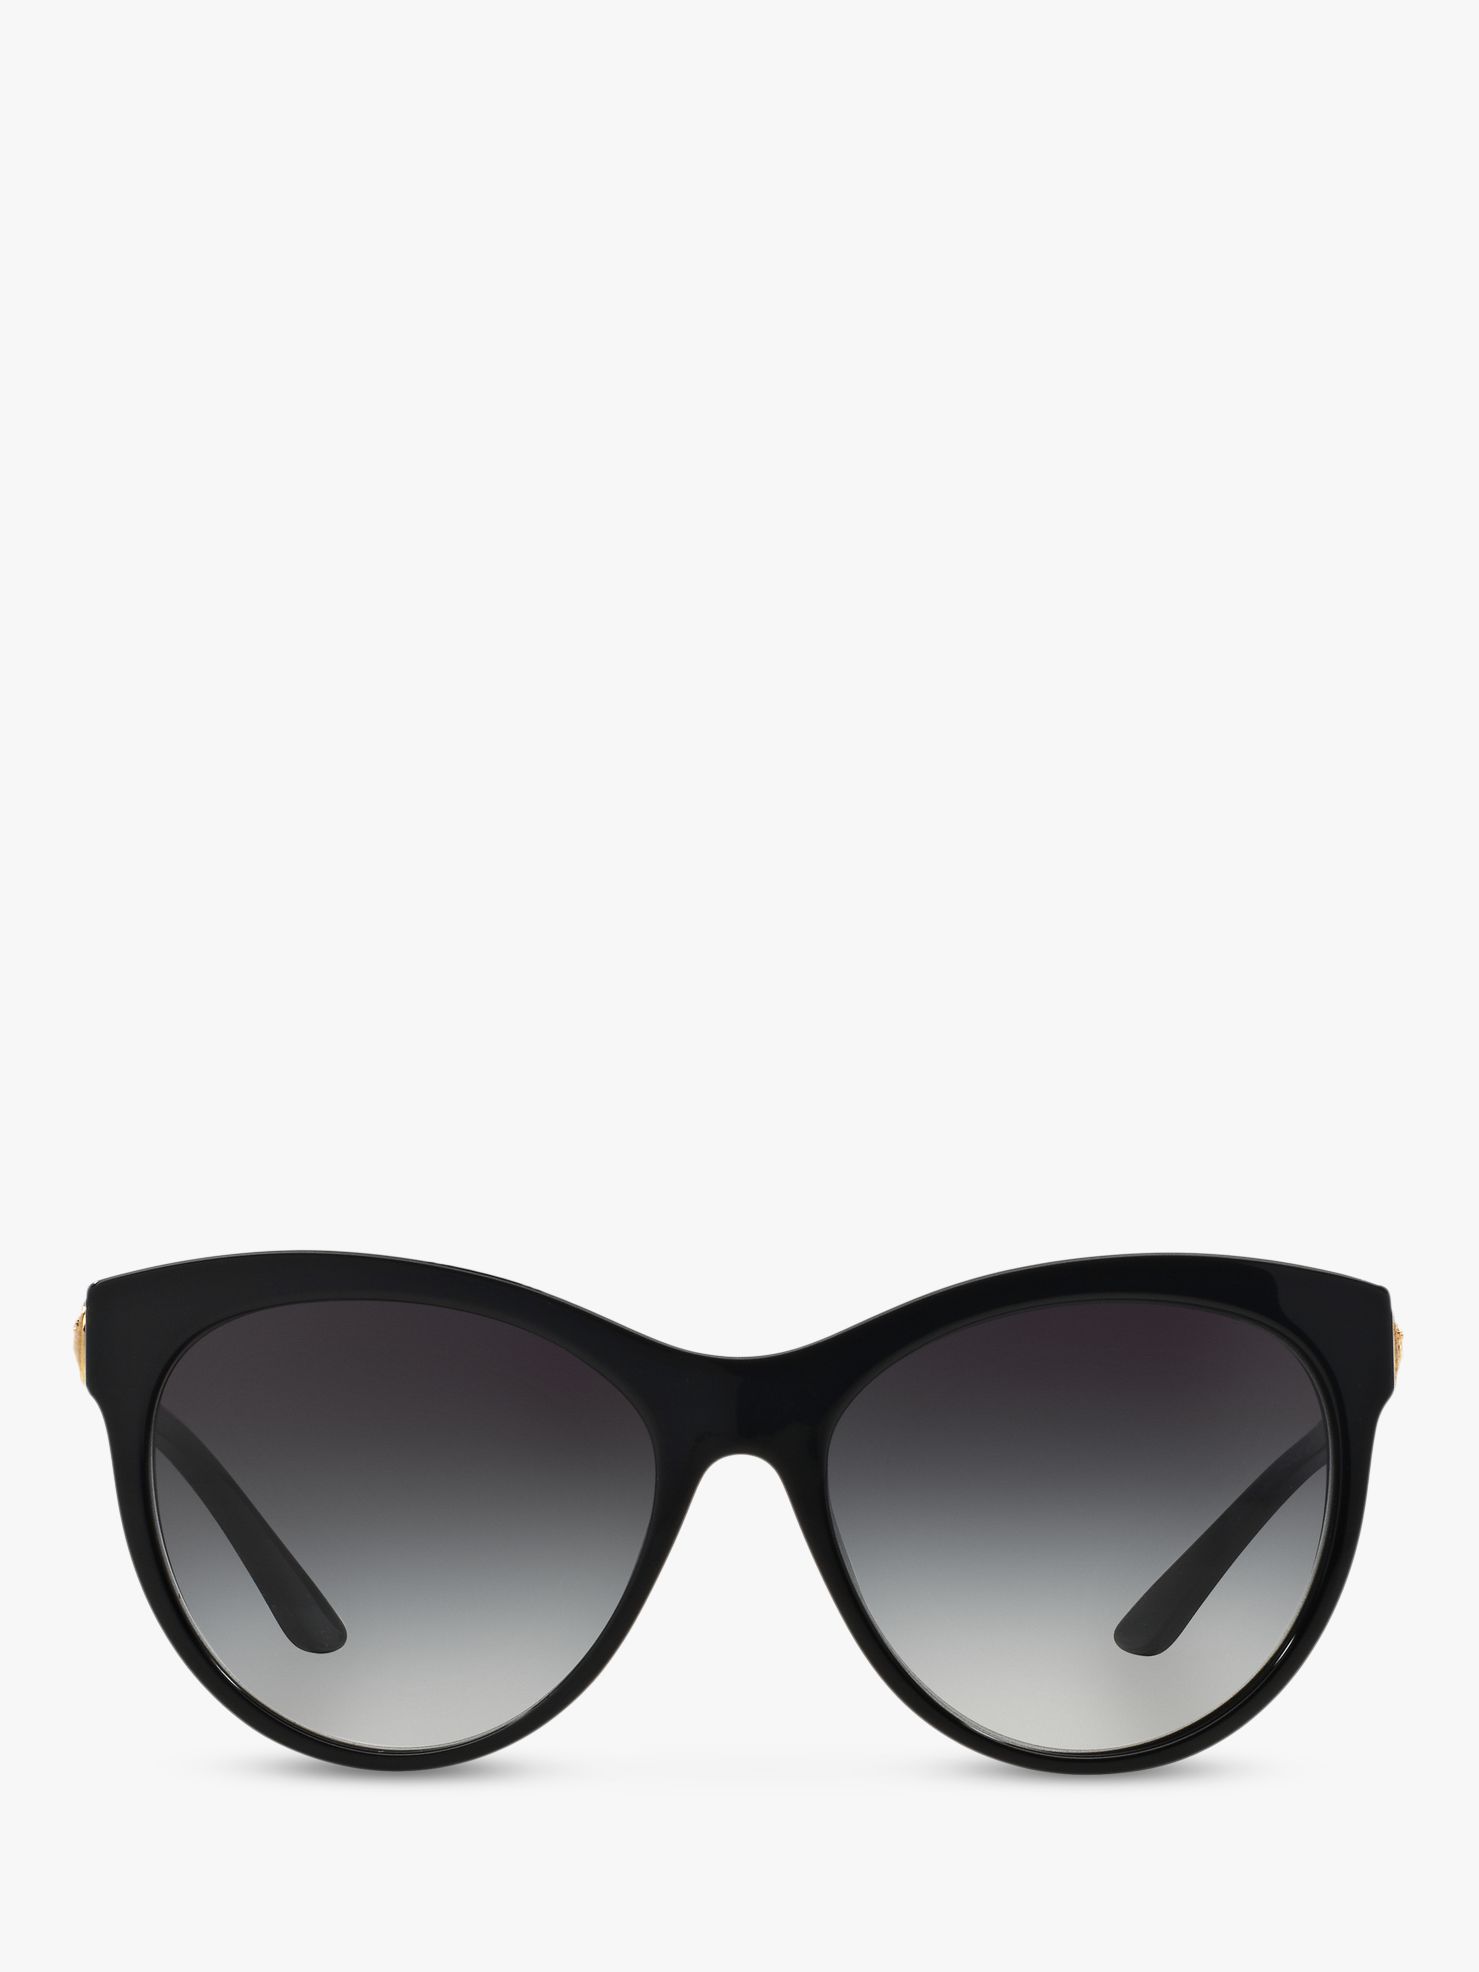 Versace VE4292 Women's Sunglasses, Black/Grey Gradient